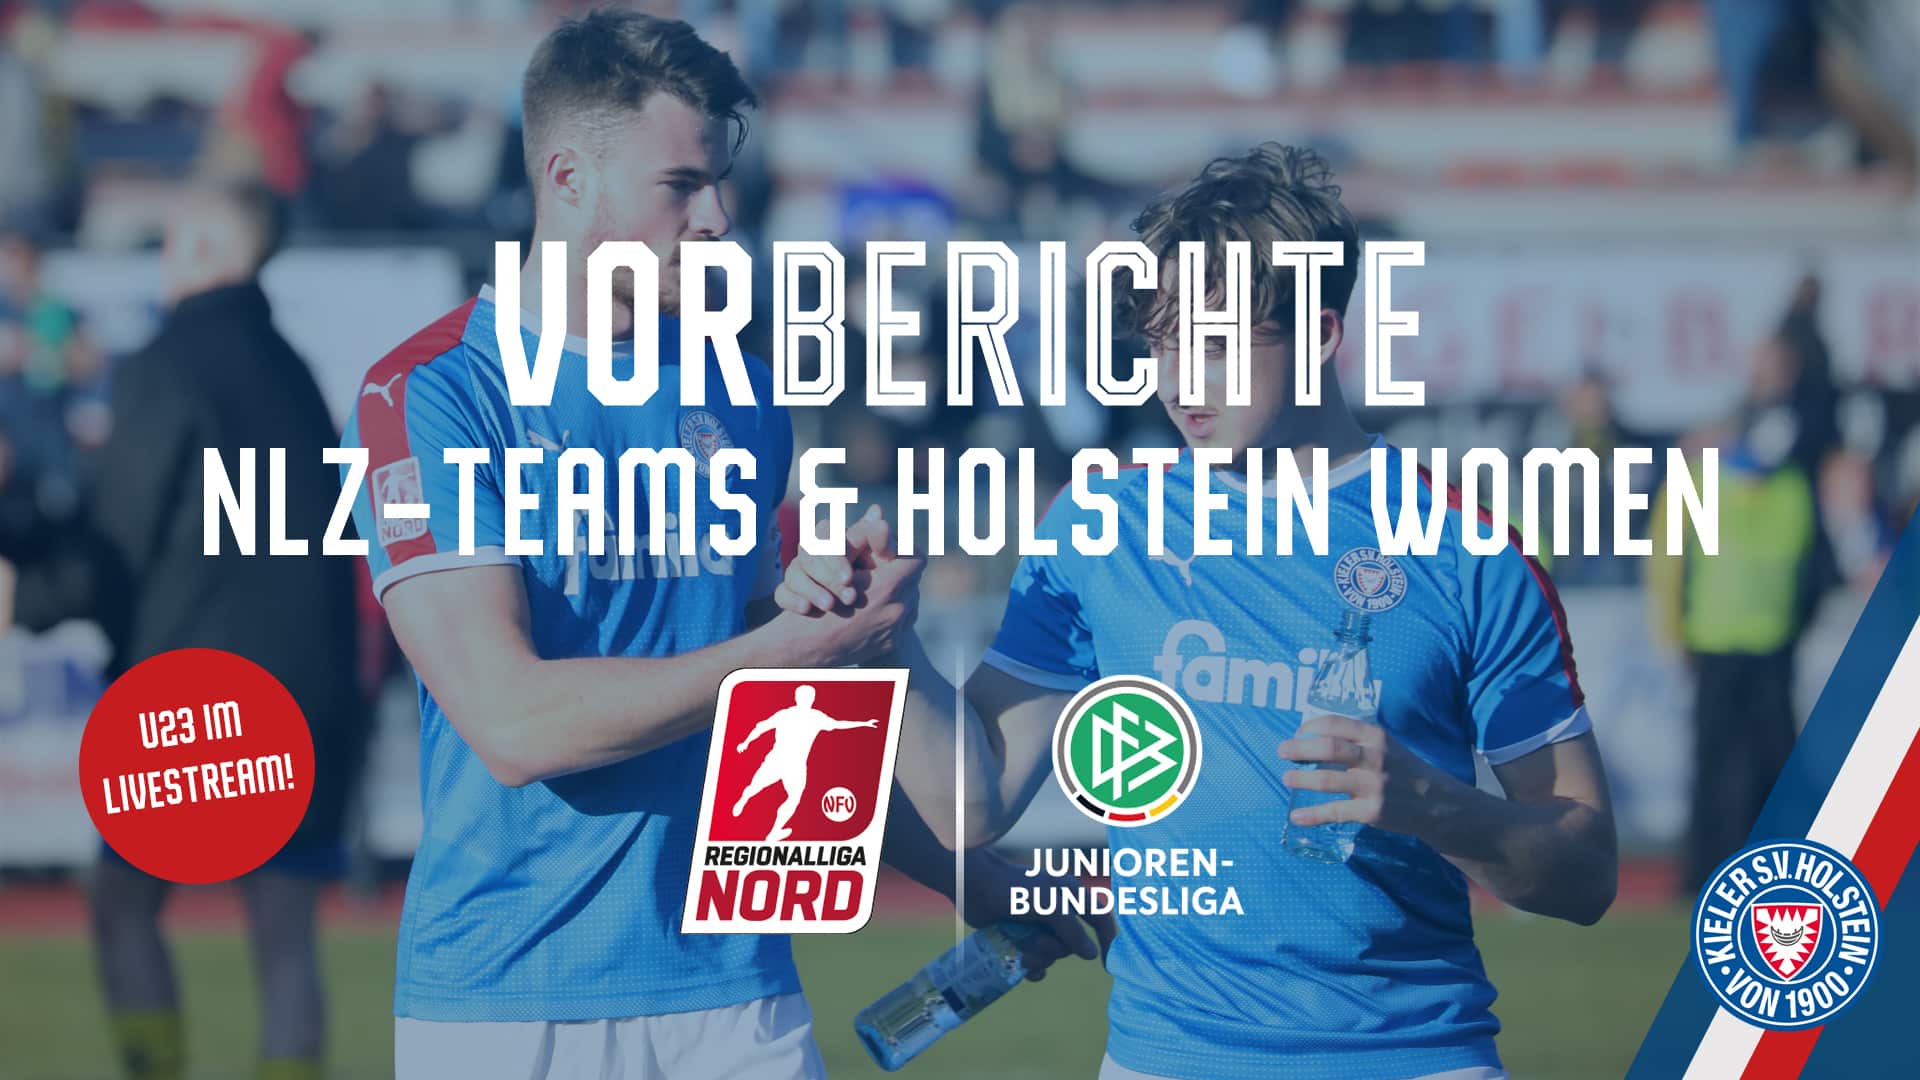 Heimspiel-Wochenende aller NLZ-Teams and der Holstein Women